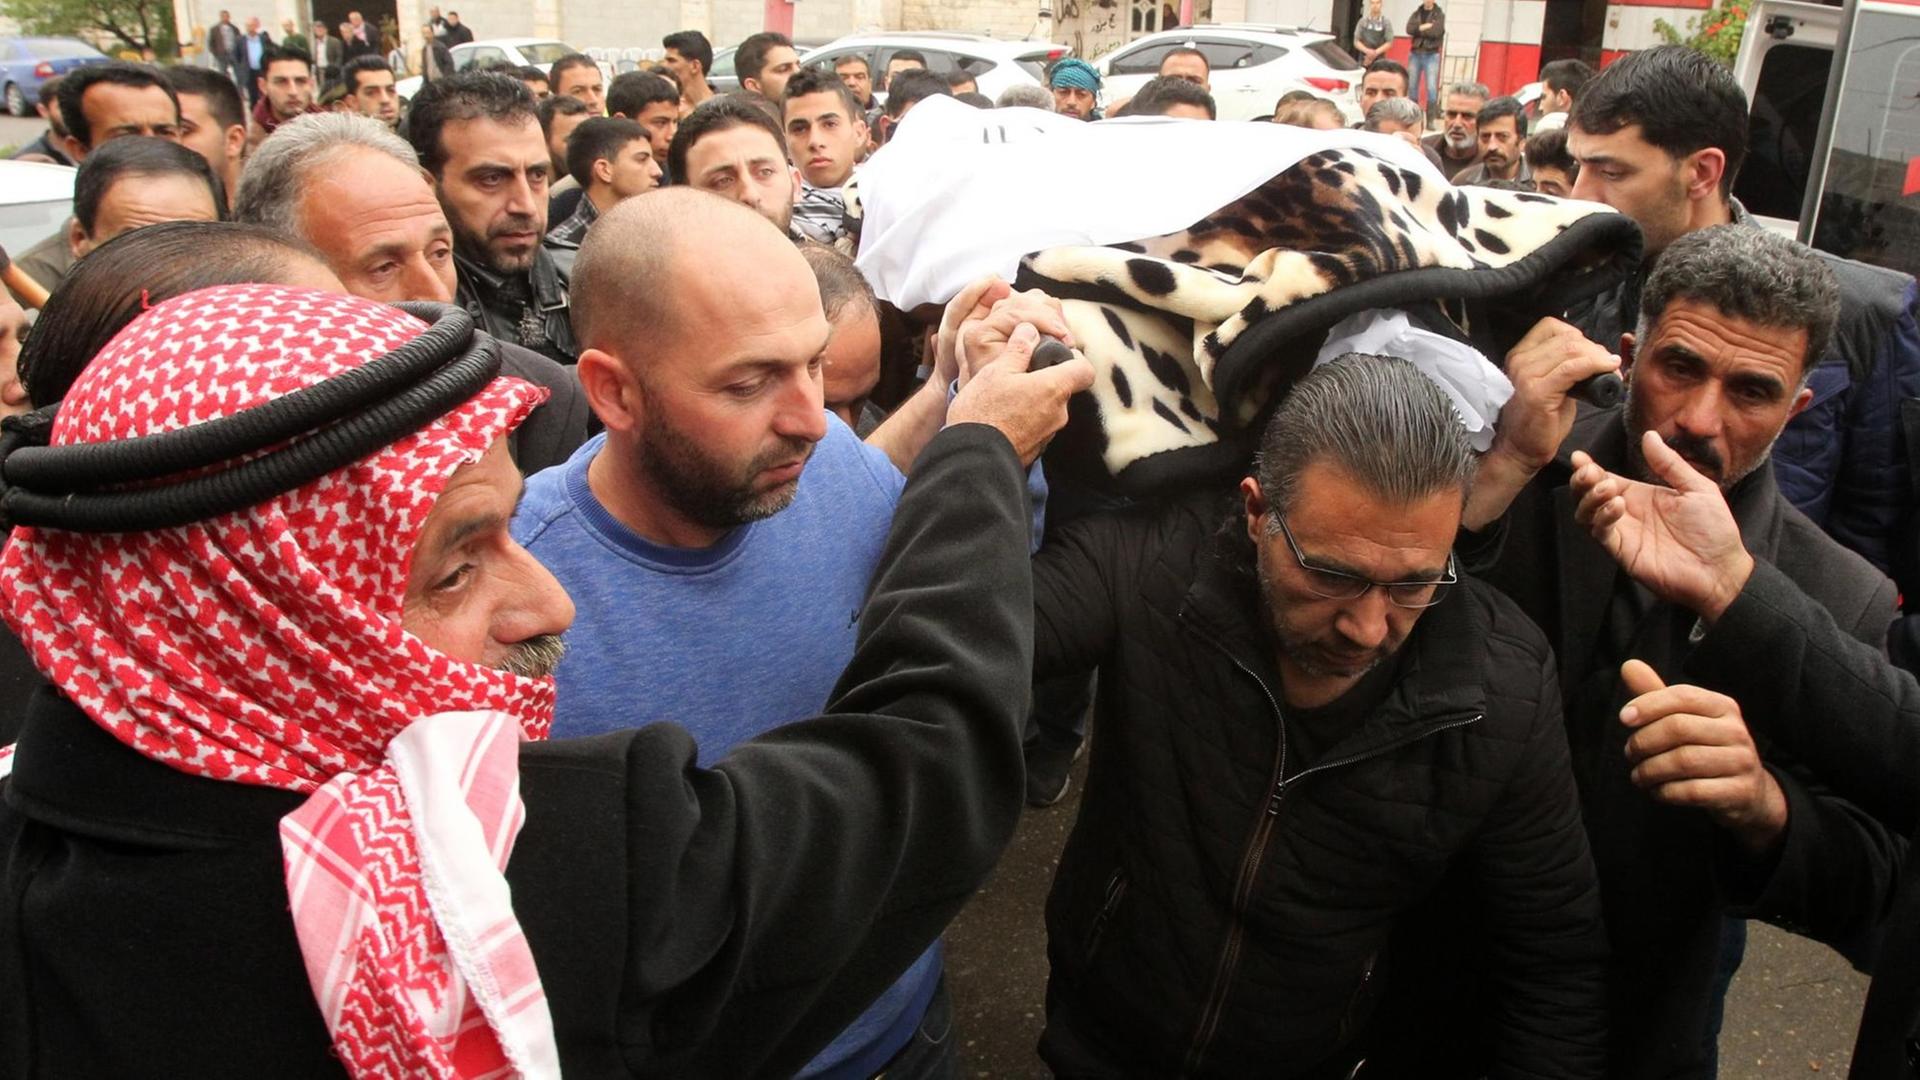 Der Leichnam des getöteten Palästinensers wird am 26. März in Hebron beerdigt. Er wurde am 24. März 2016 von einem israelischen Soldaten getötet.